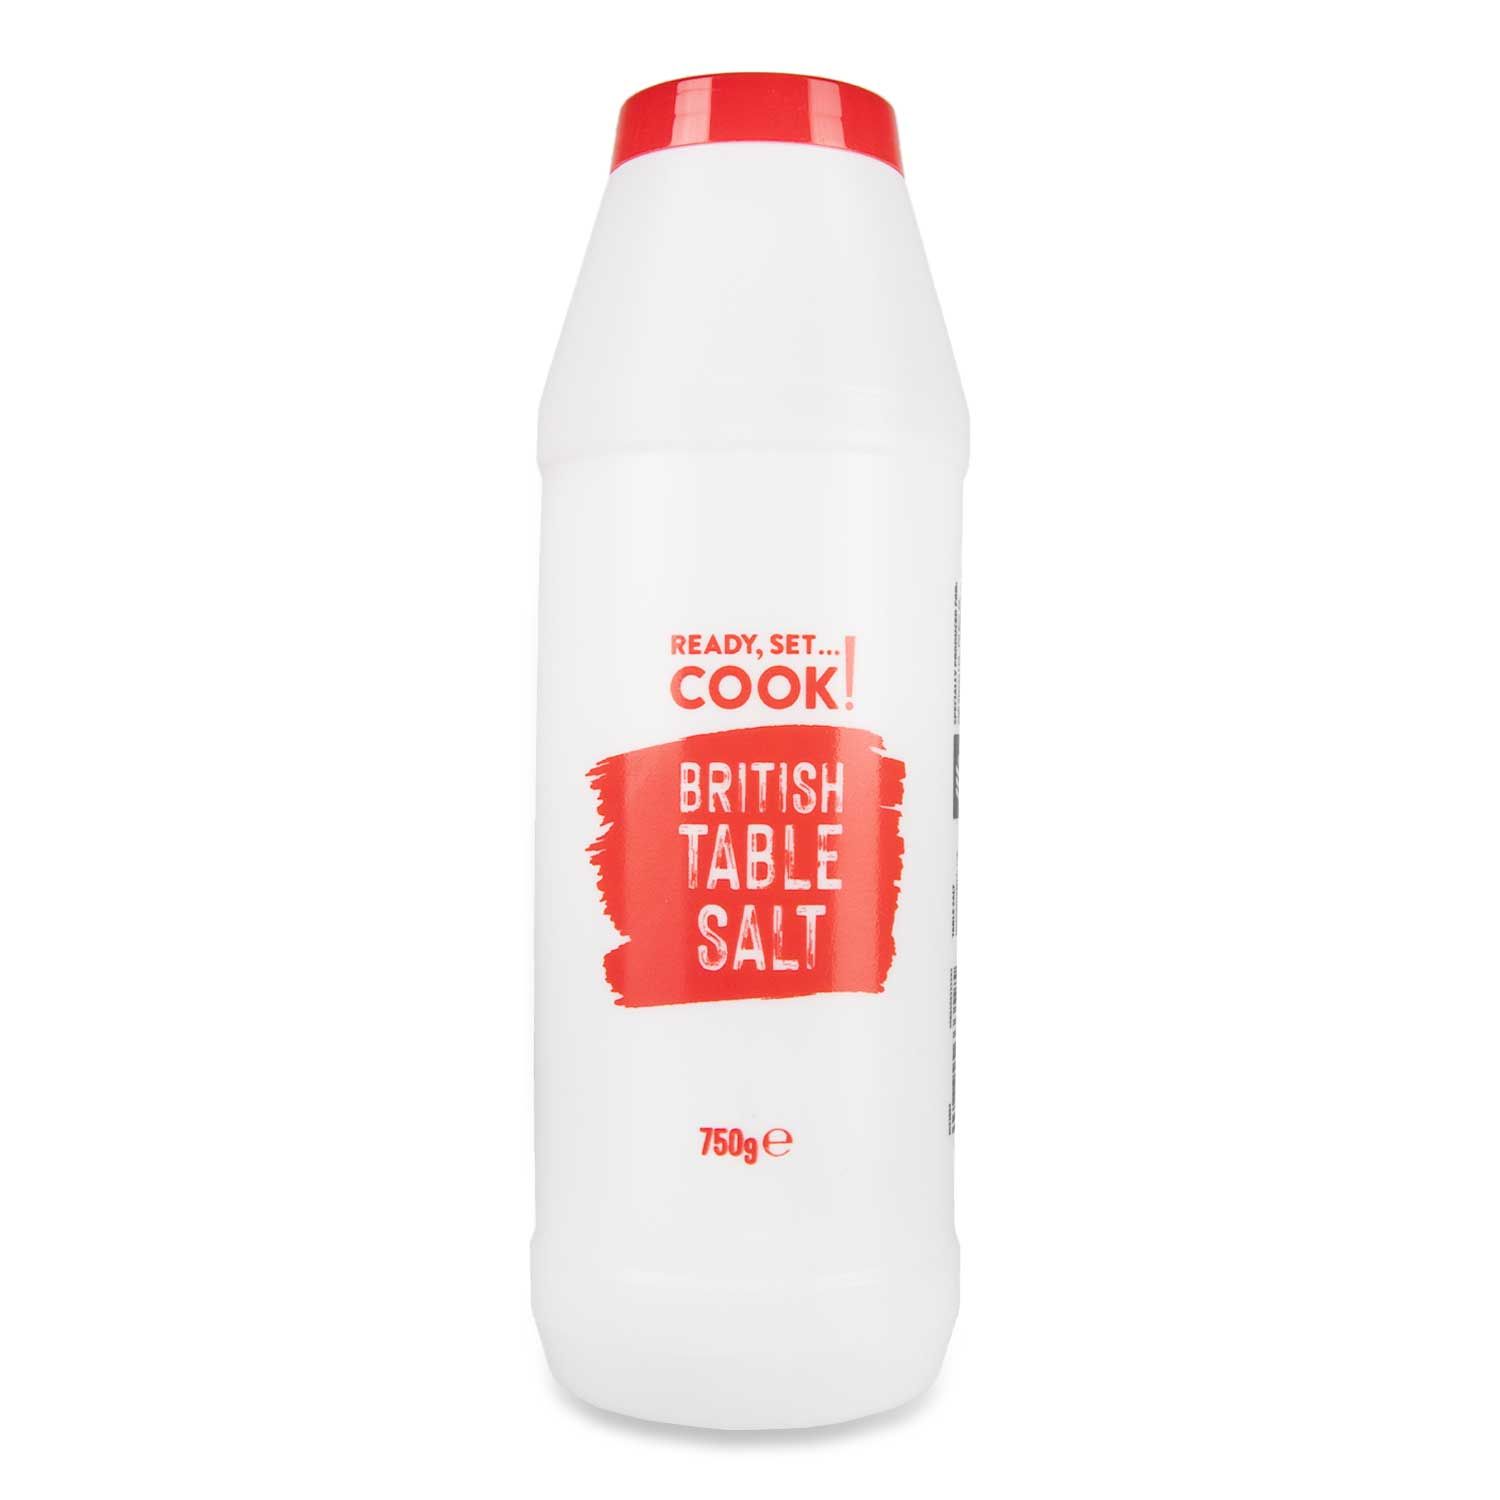 Salz kann man bei Aldi schon für 65 Pence für 750 g kaufen